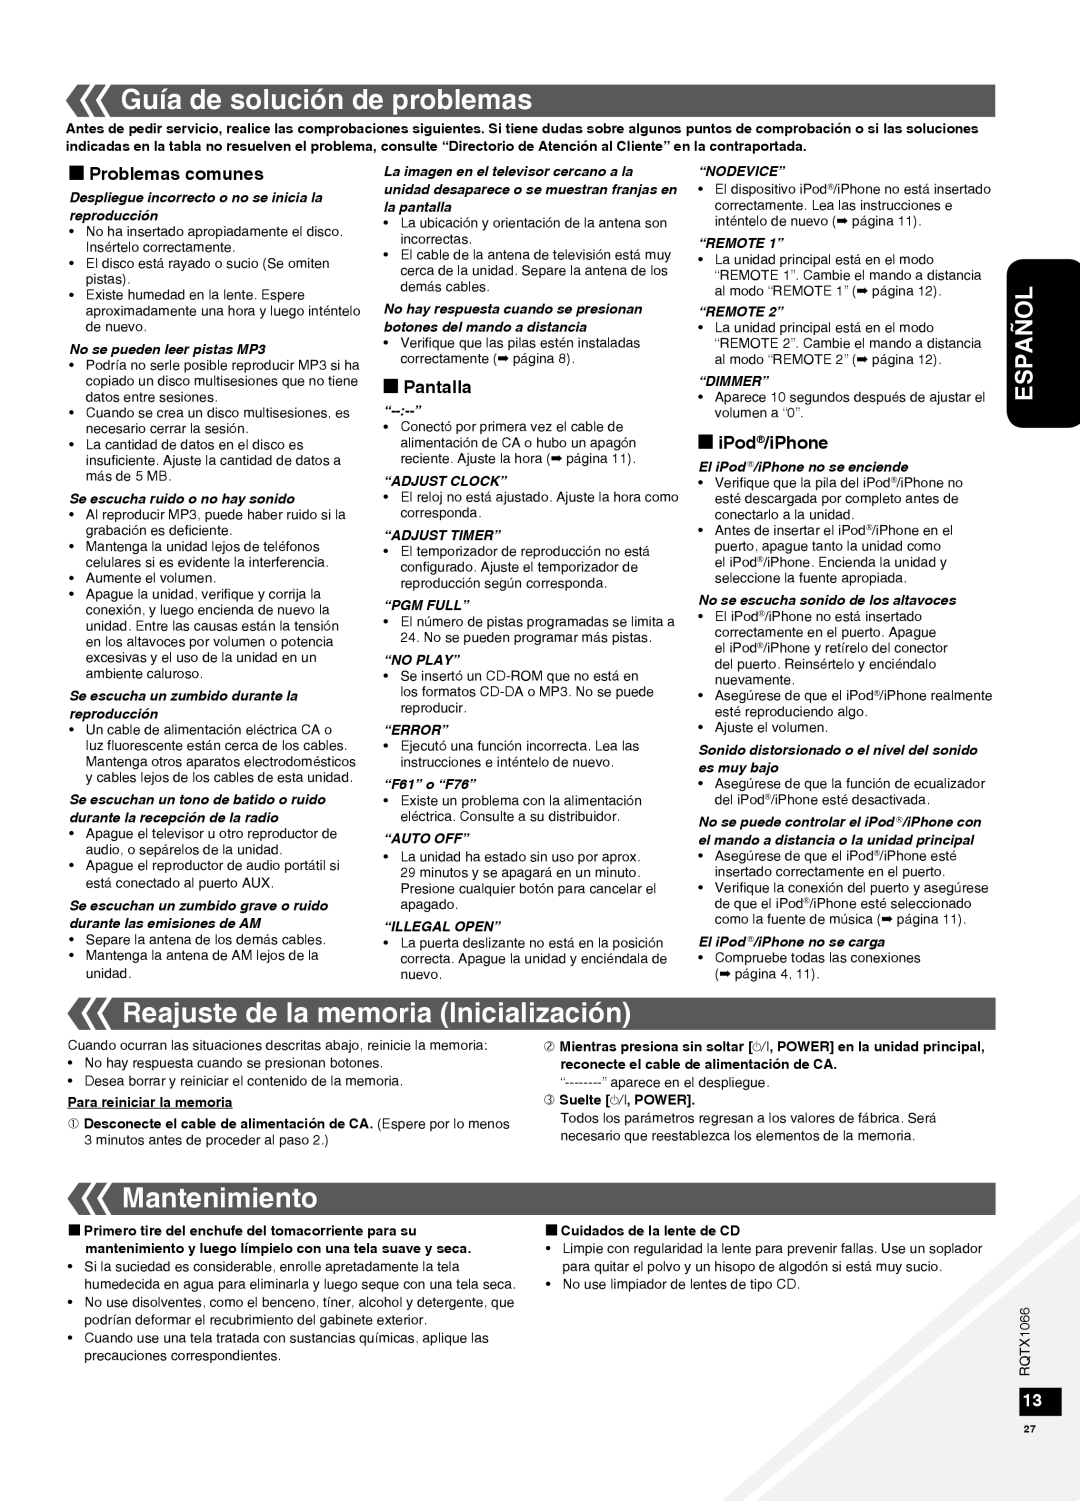 Panasonic SC-HC30 Guía de solución de problemas, Reajuste de la memoria Inicialización, Mantenimiento, g Problemas comunes 